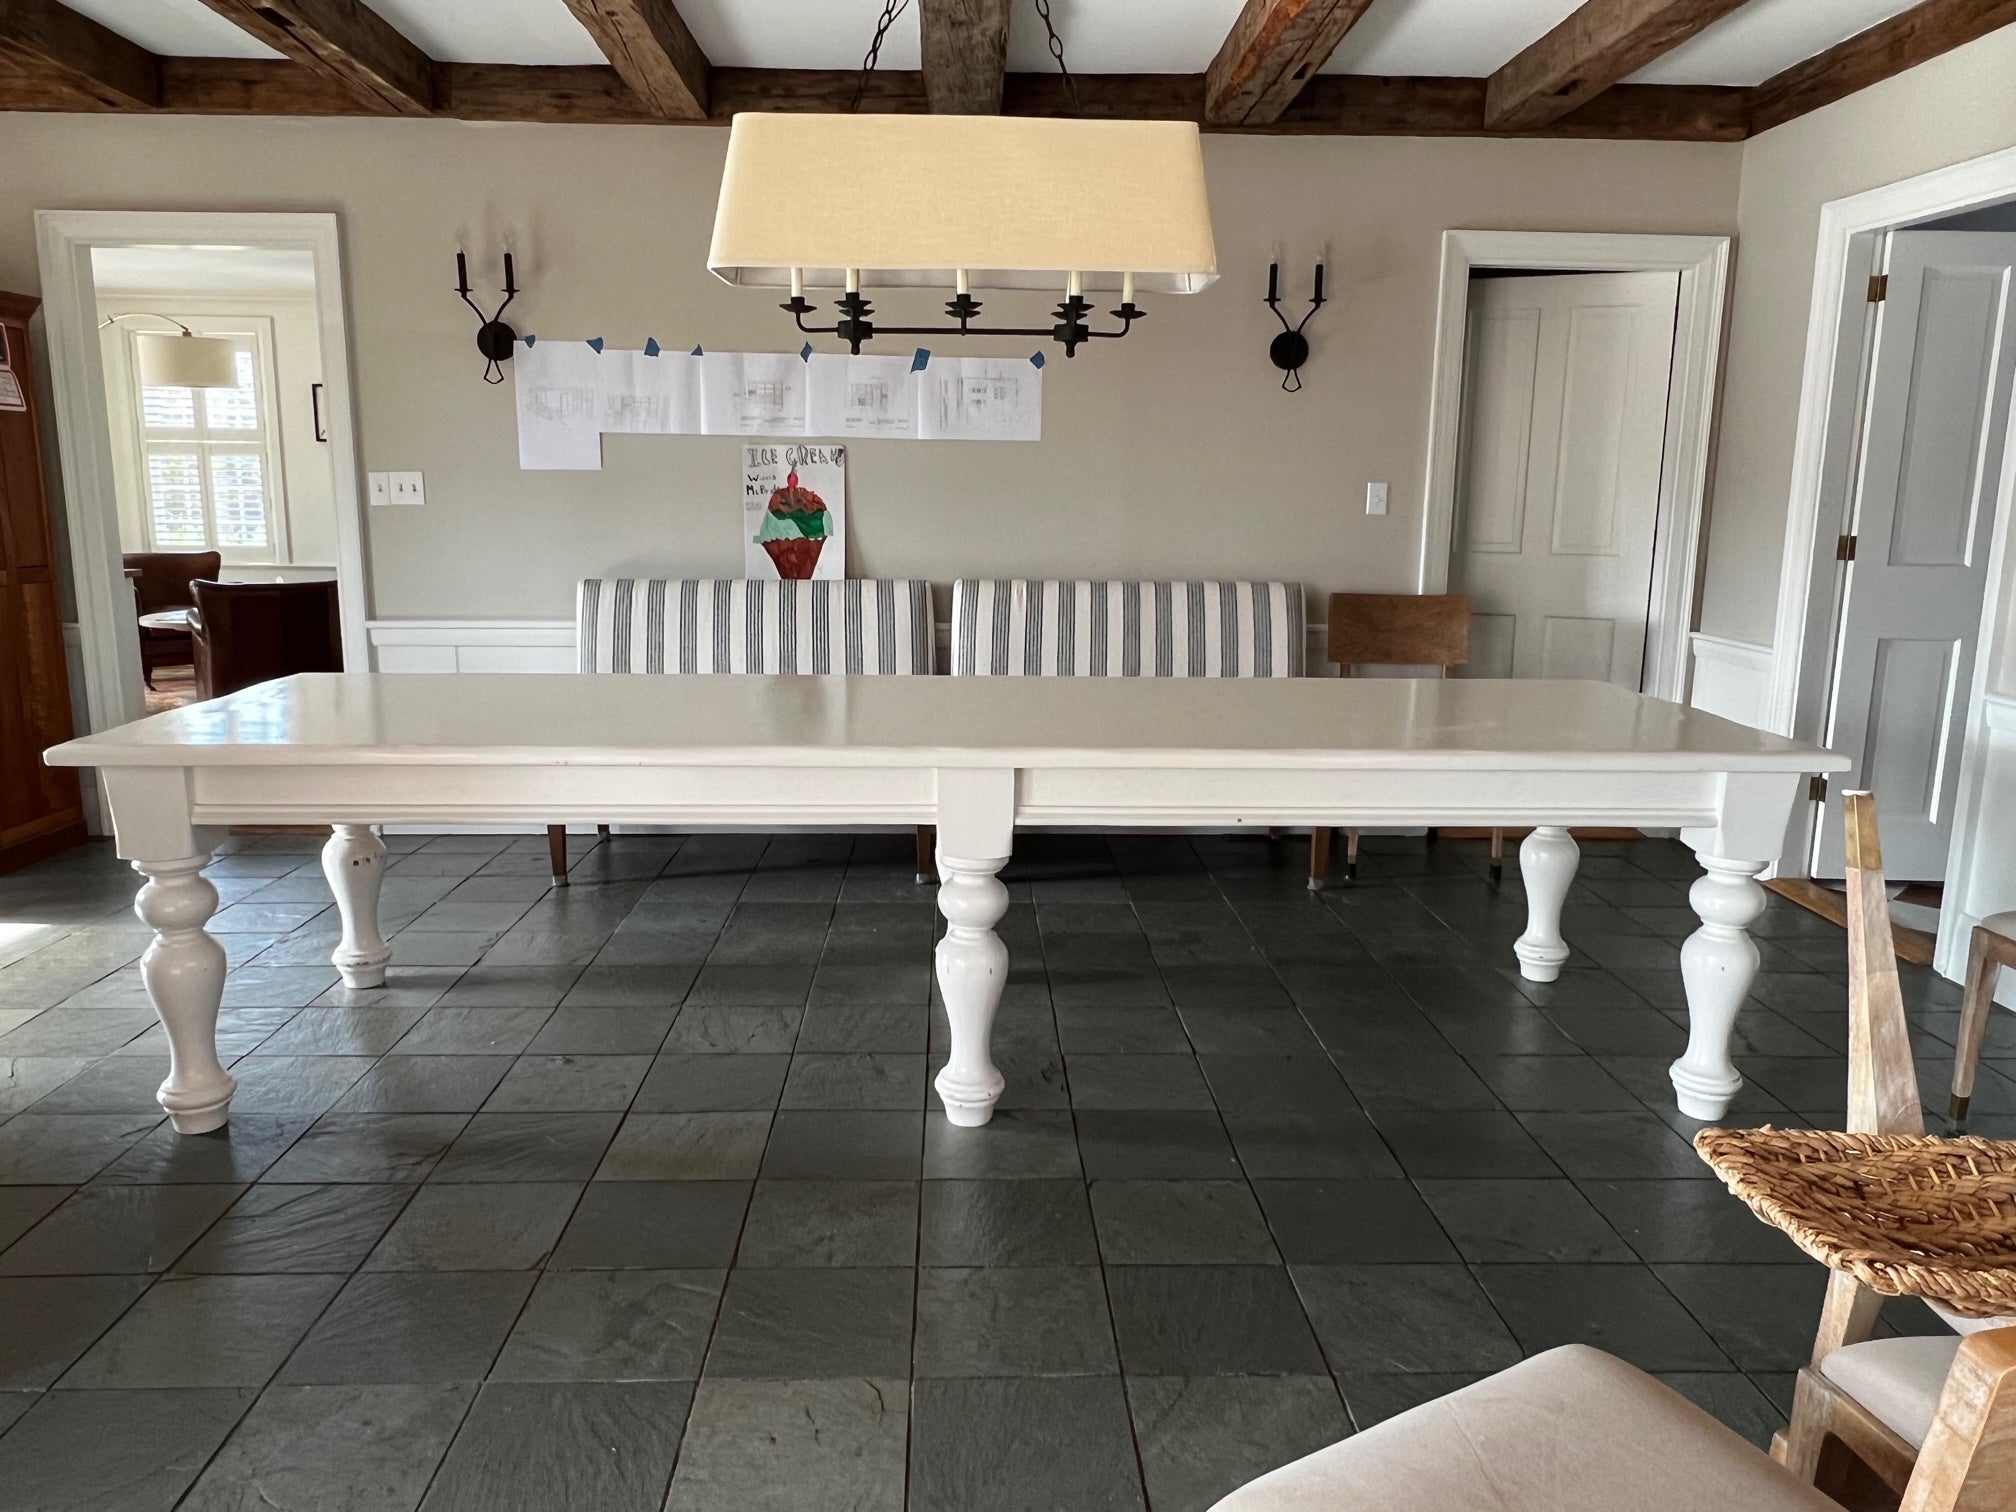 Monumentaler Premium-Kiefernholztisch im französischen Landhausstil von PJ Milligan, Santa Barbara, mit einer geräumigen Länge von 11 Fuß und einer schönen weiß lackierten Oberfläche. Die dicke Plankenplatte wird von gedrechselten Beinen getragen.  